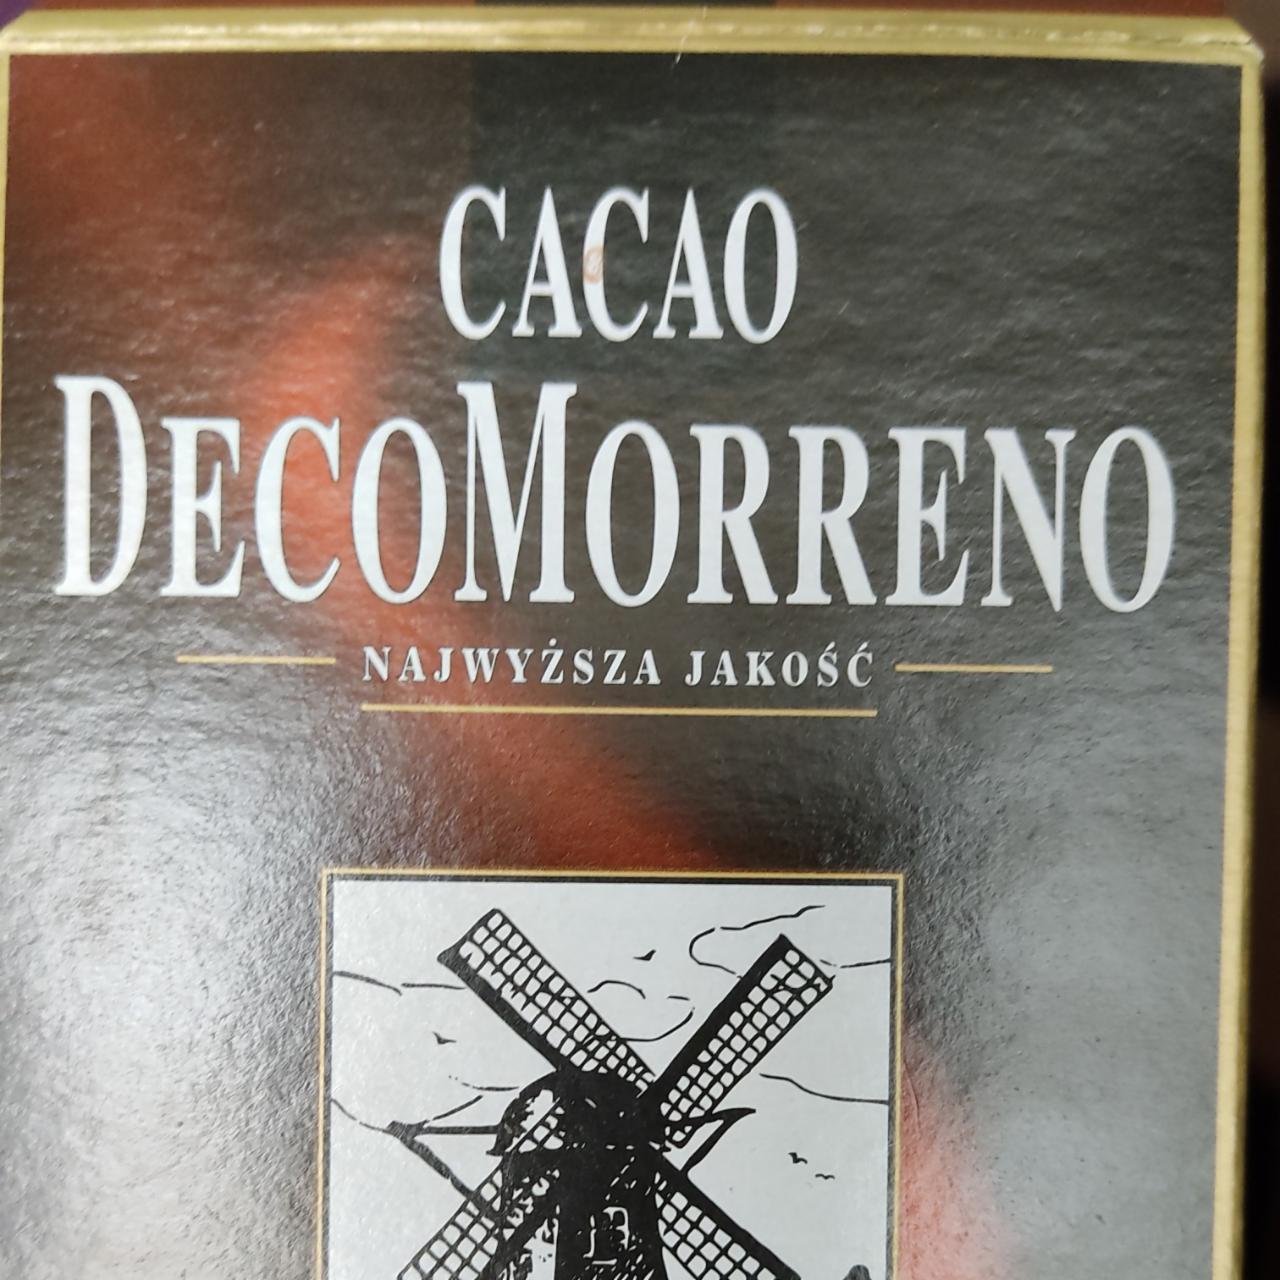 Zdjęcia - Najwyższa Jakość Cacao DecoMorreno